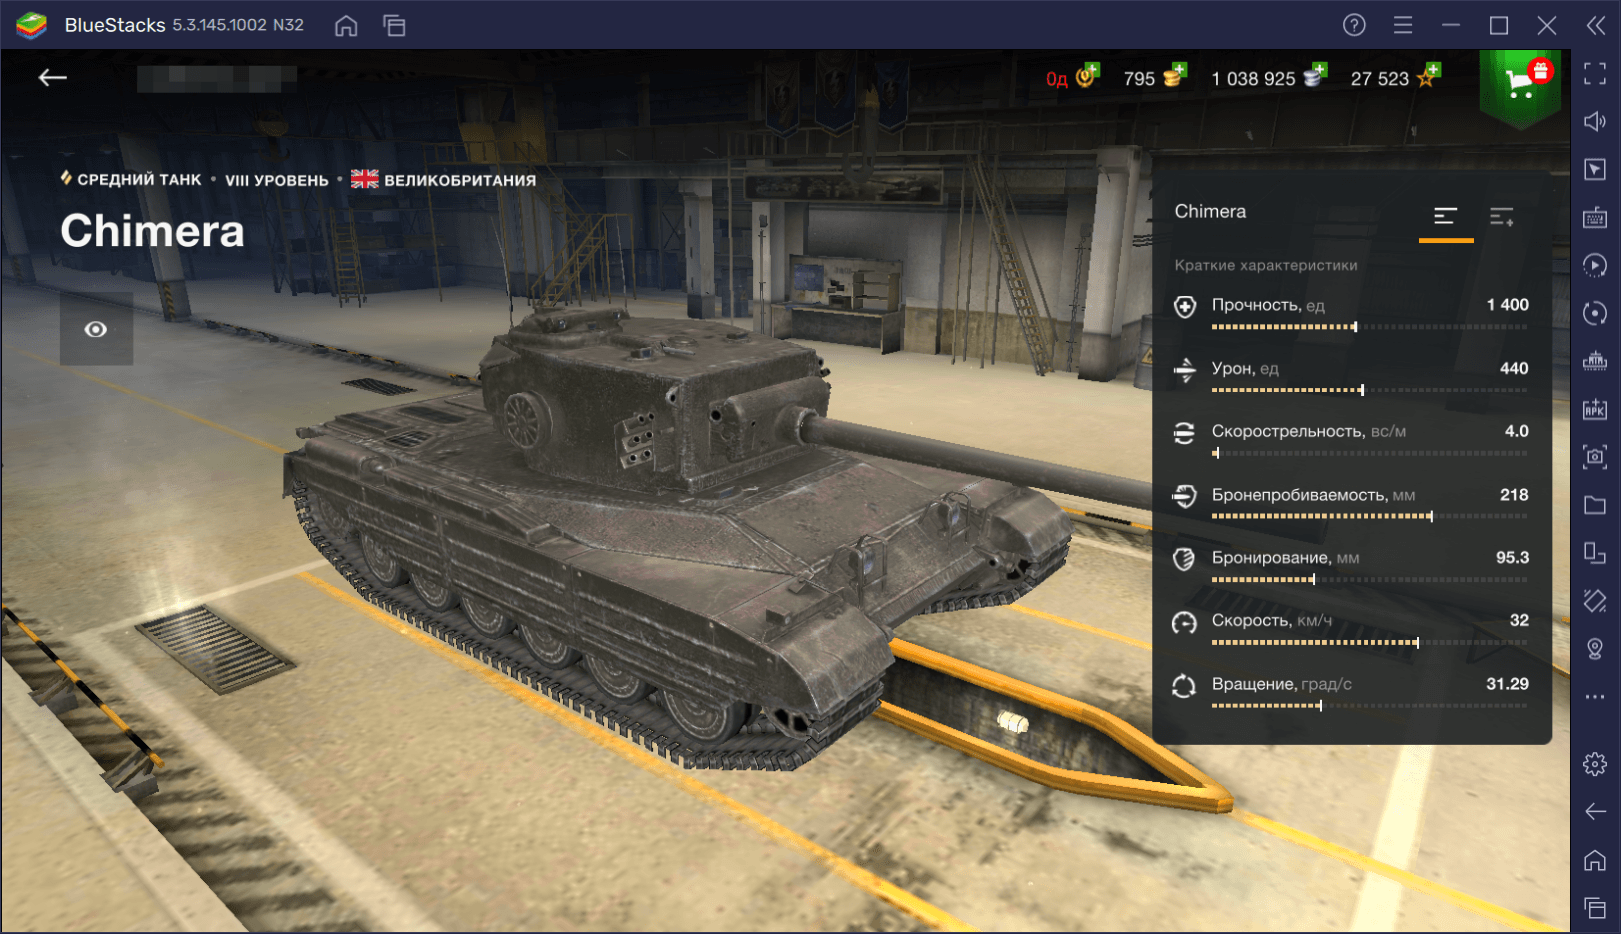 Гайд по премиумному танку Chimera в World of Tanks Blitz. Обзор параметров, достоинств и тактик игры